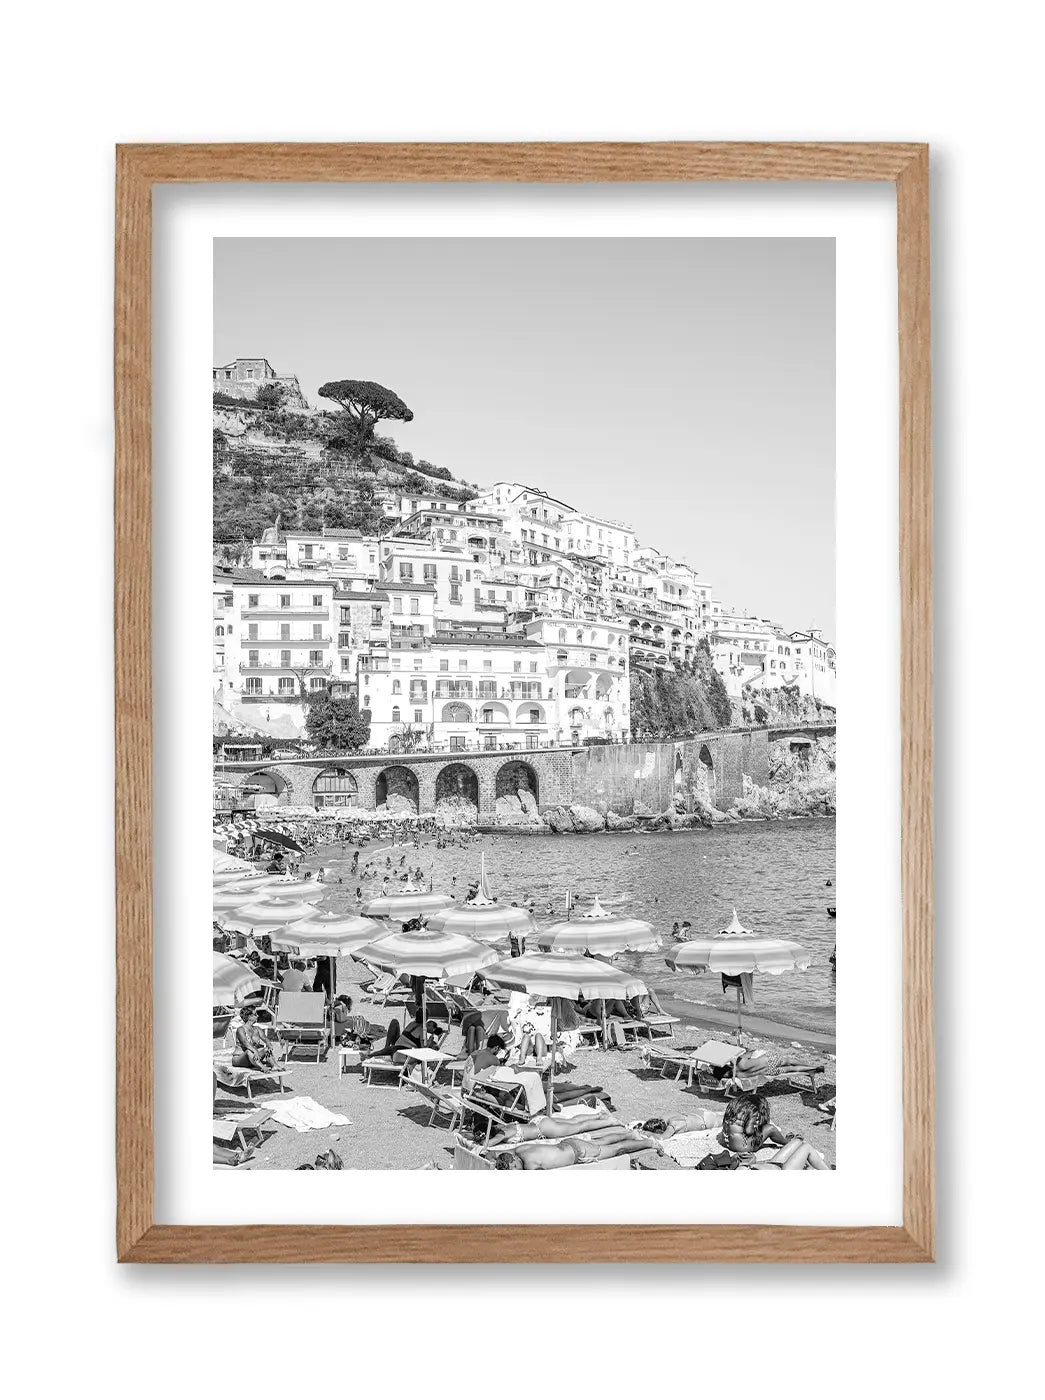 An Amalfi Summer